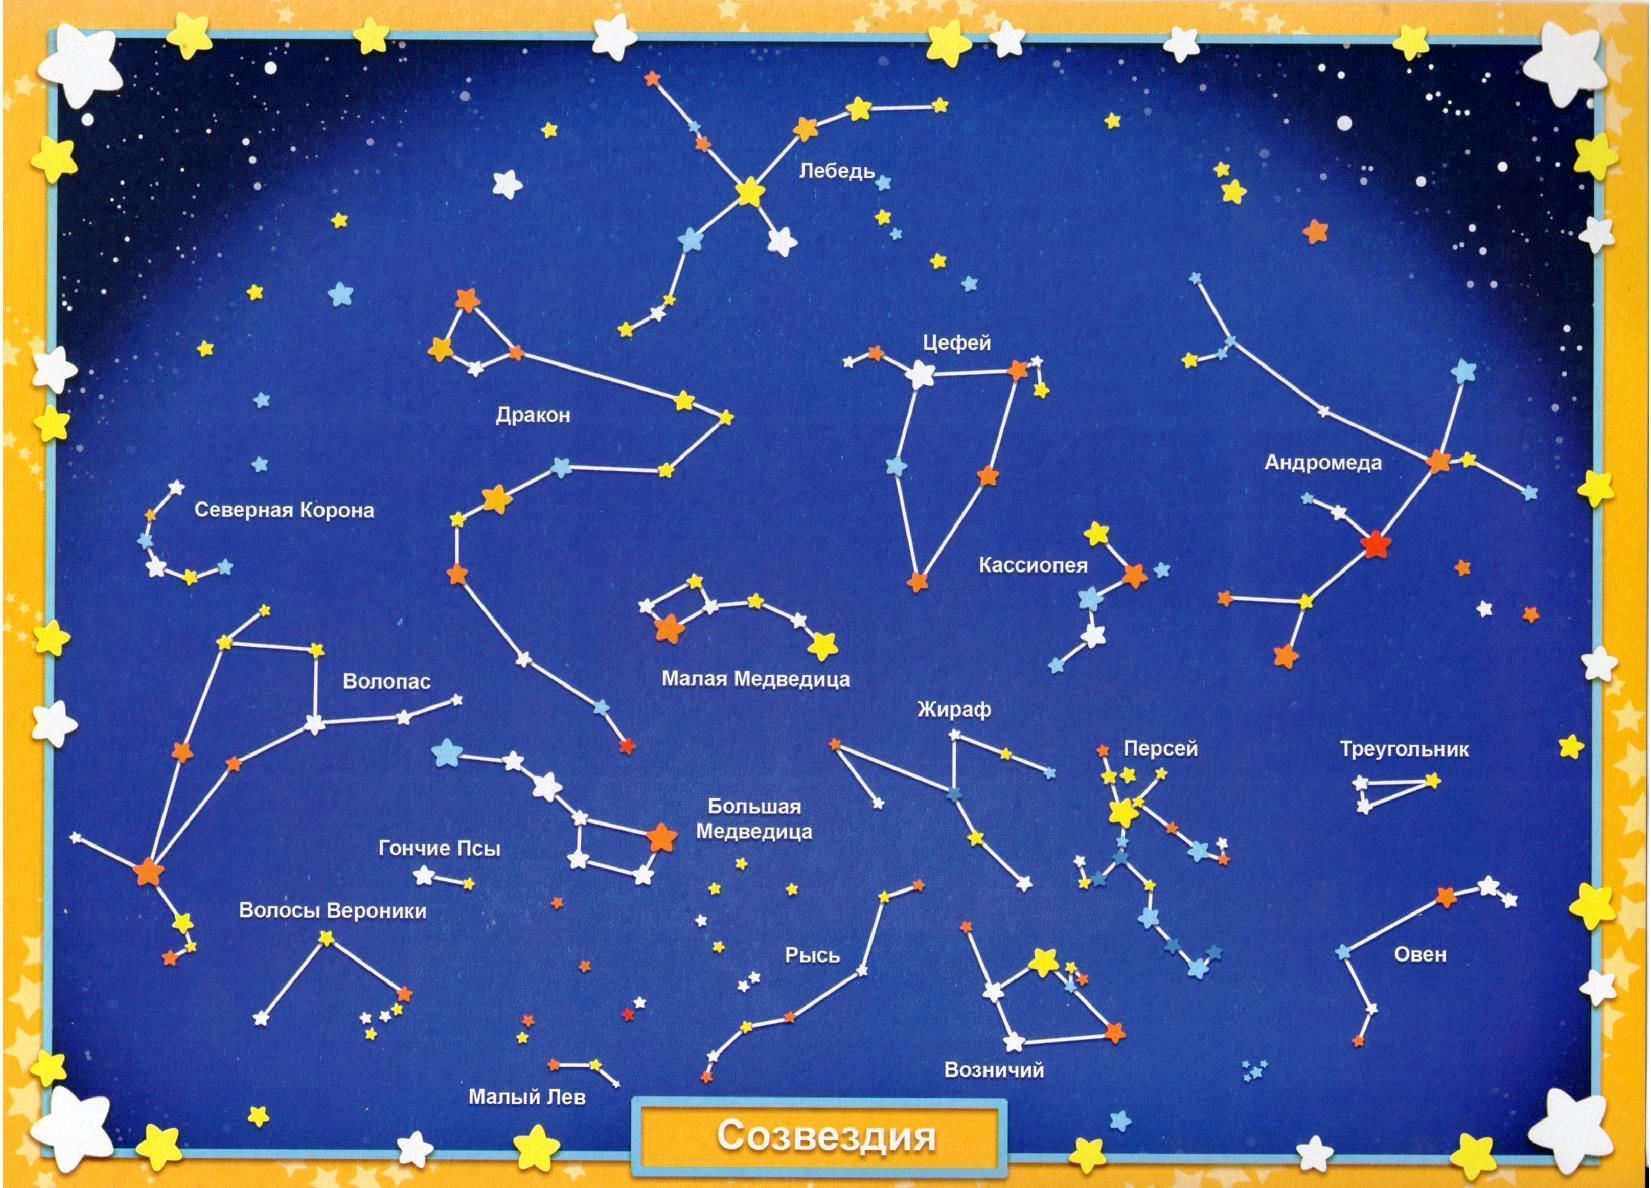 Звездное небо какие созвездия. Схематическое изображение созвездий для детей и их названия. Звездное небо созвездия для детей. Карта звездного неба с названиями созвездий. Звездноемнебл созвездия.